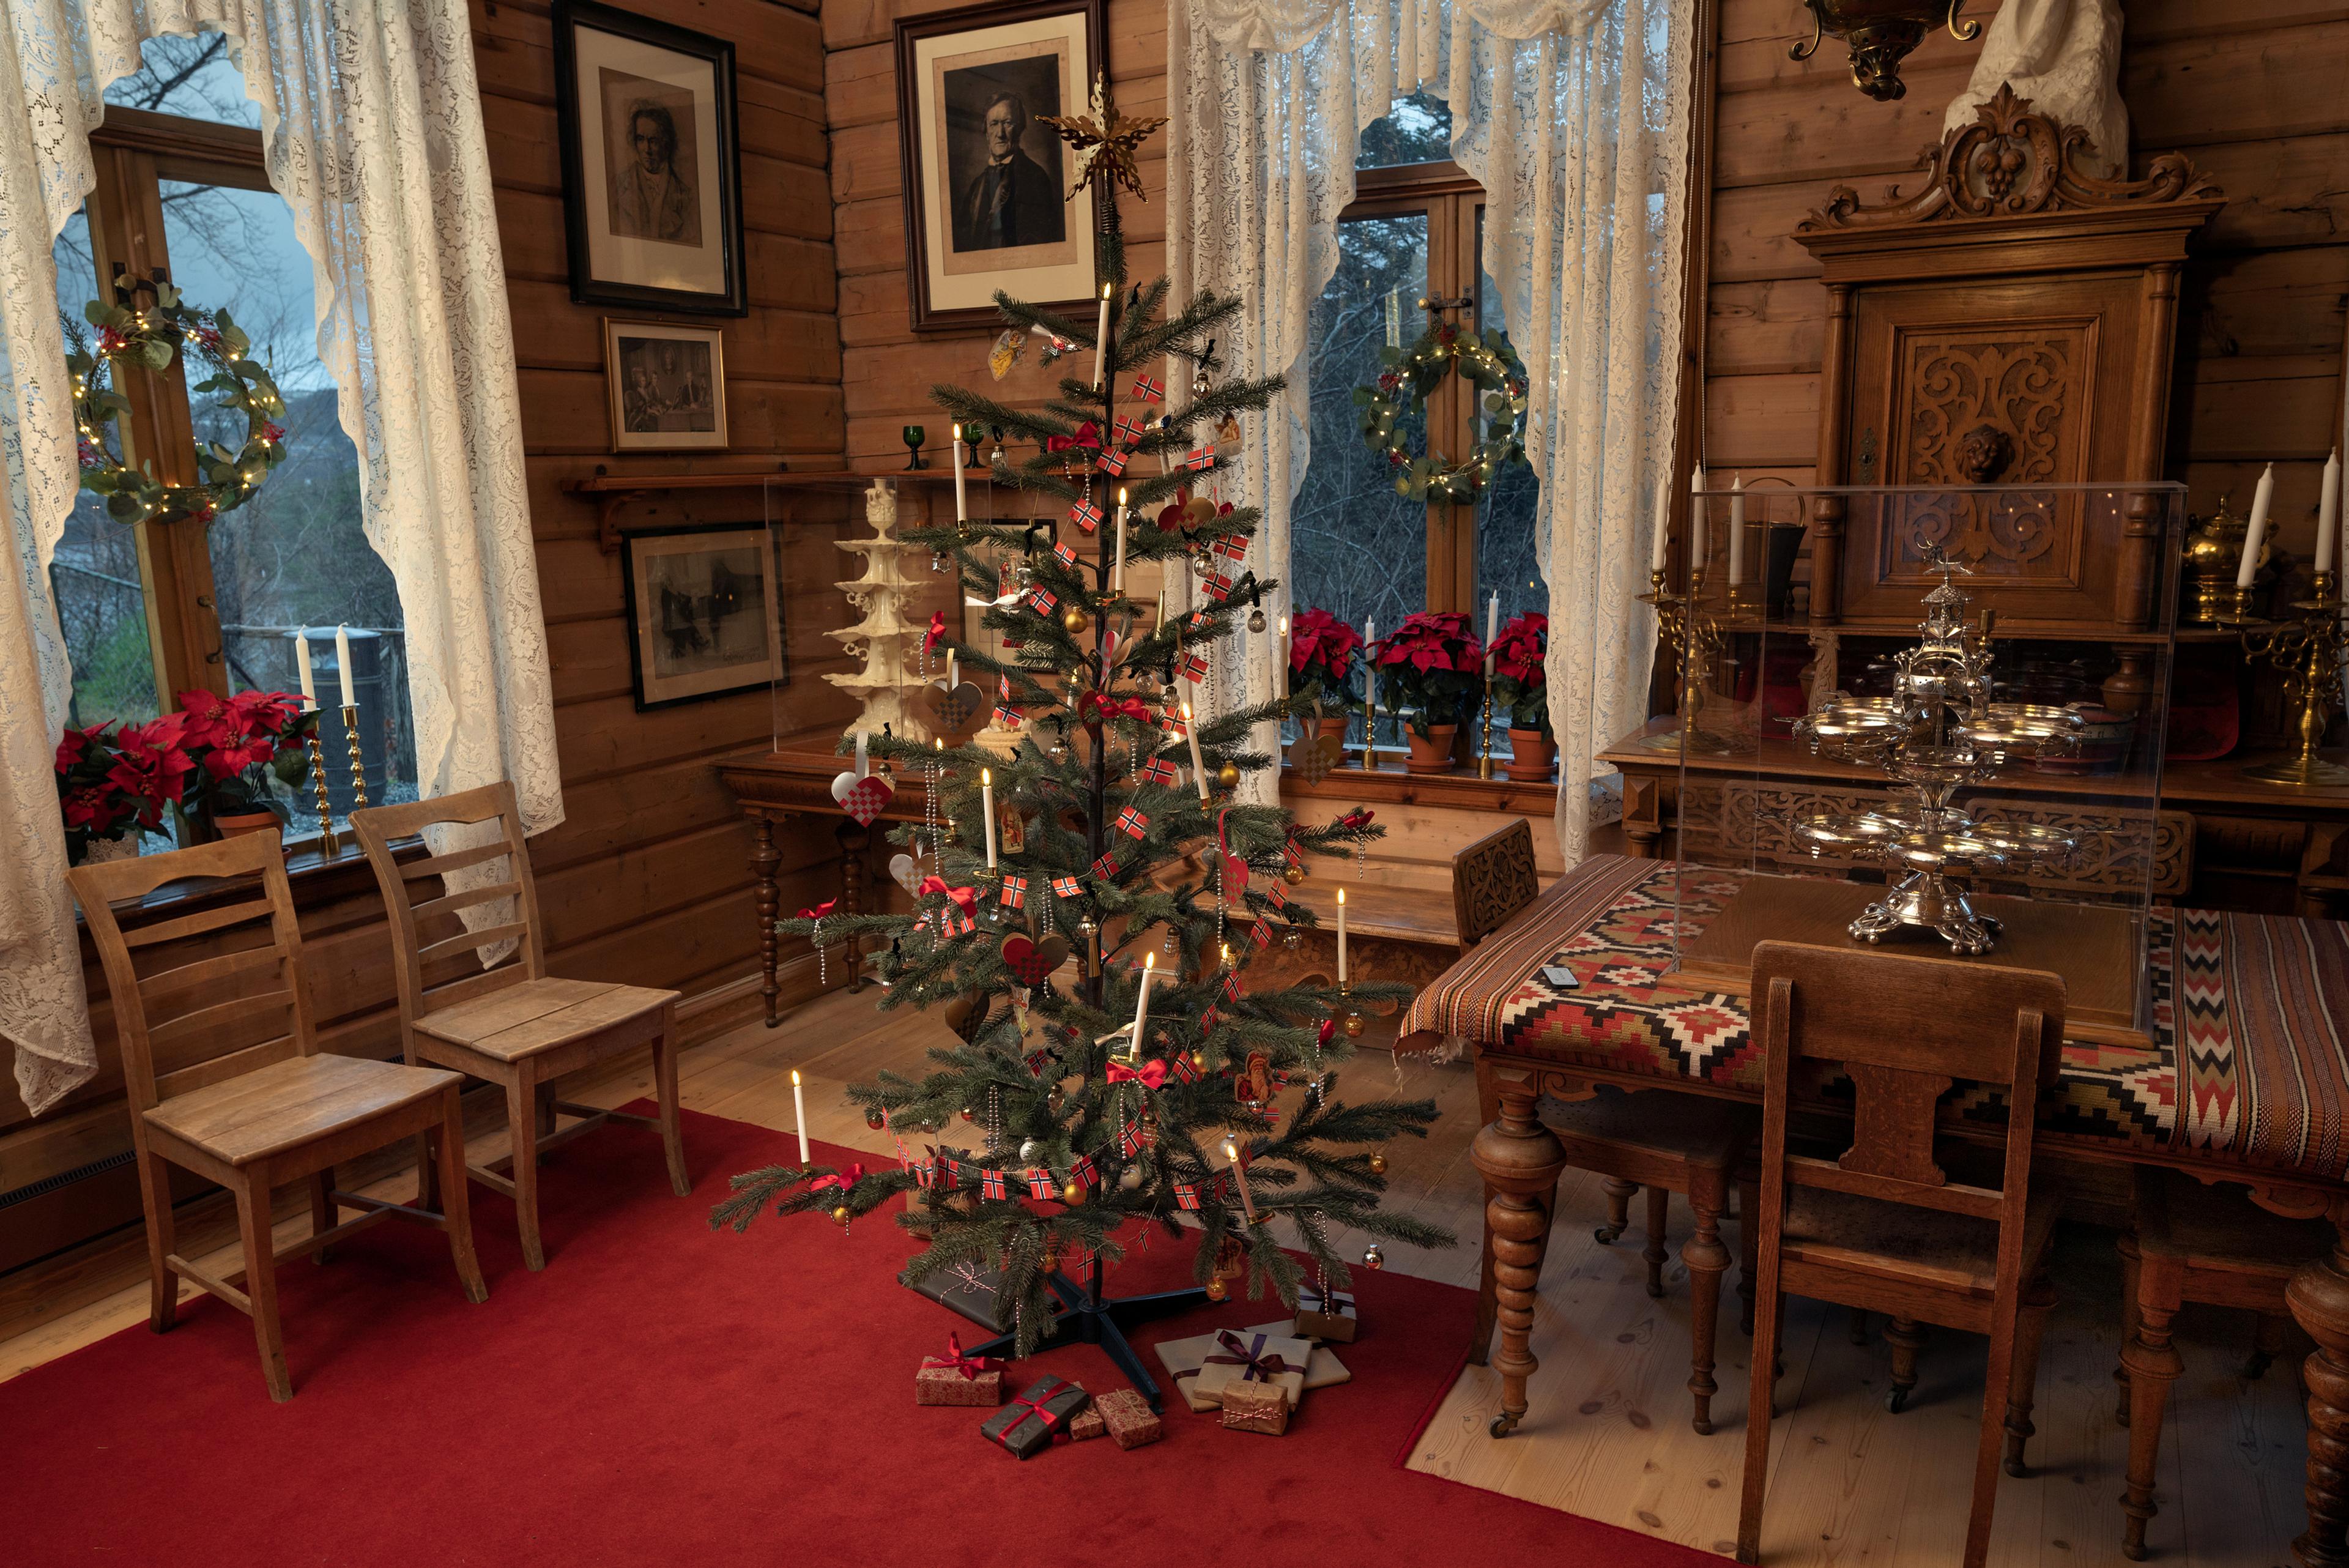 Et interiør fra Griegs villa som viser et juletre, pyntet med lys og norske flagg stående i spisestuen. I vinduene står juleblomster og julekranser er hengt opp. 